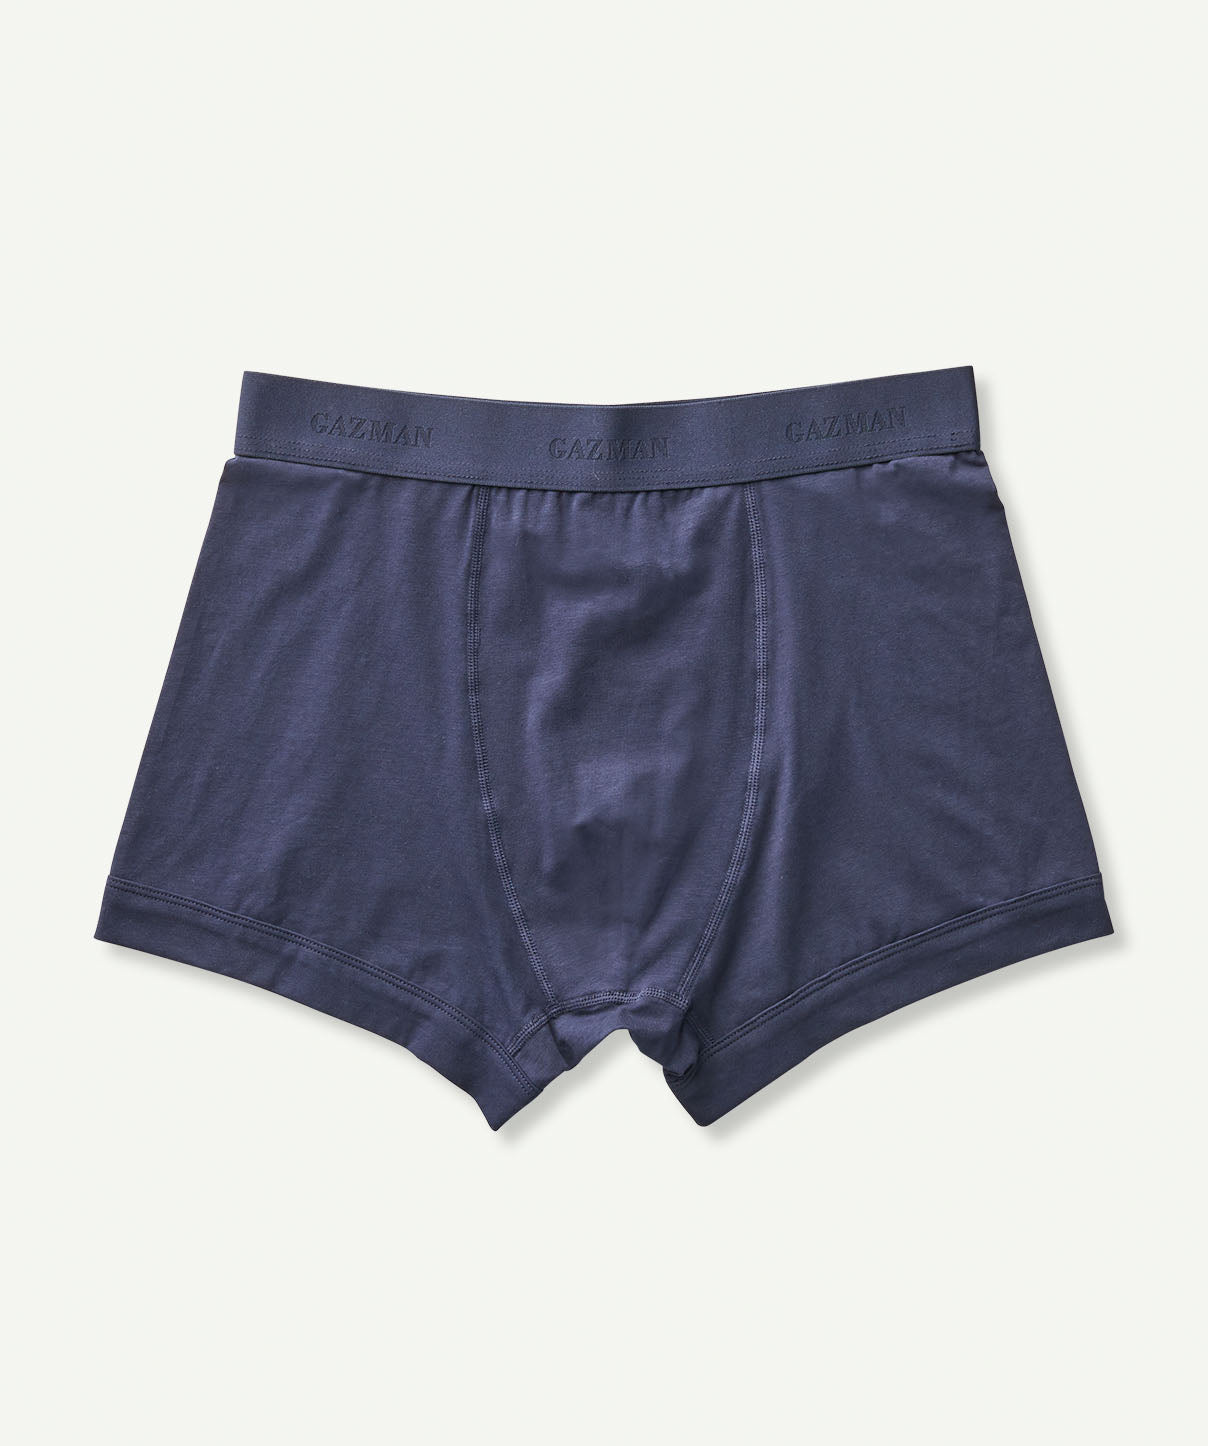 2 Pack of Boxer Briefs - Navy Mix - Underwear - GAZMAN